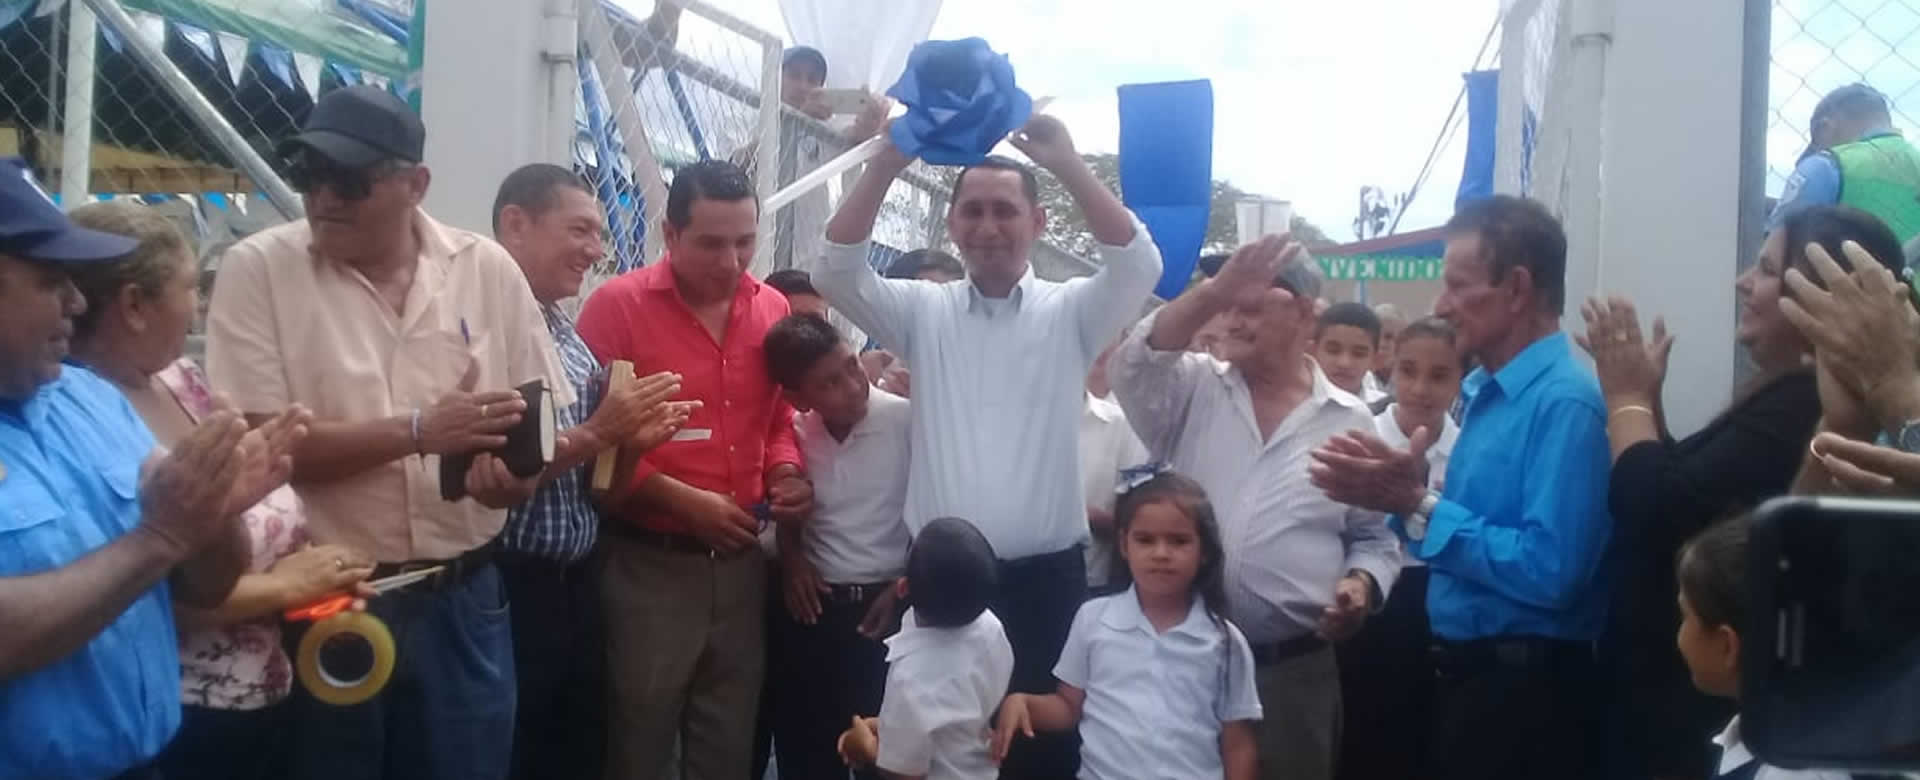 MINED reinaugura el Centro Escolar Valle San Antonio en El Sauce